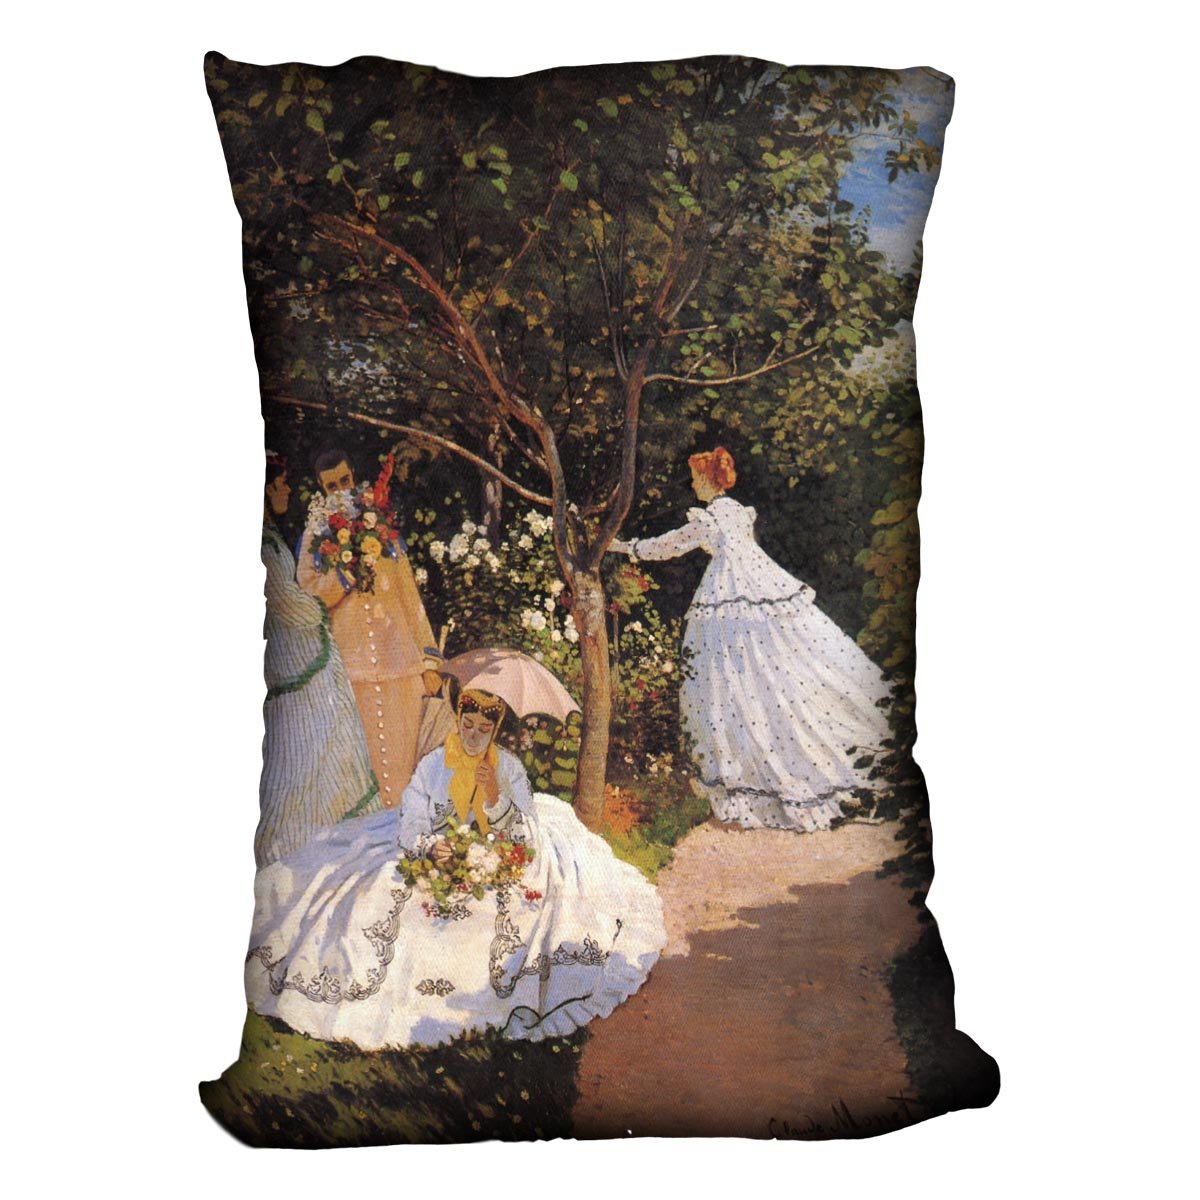 Women in the Garden by Monet Throw Pillow